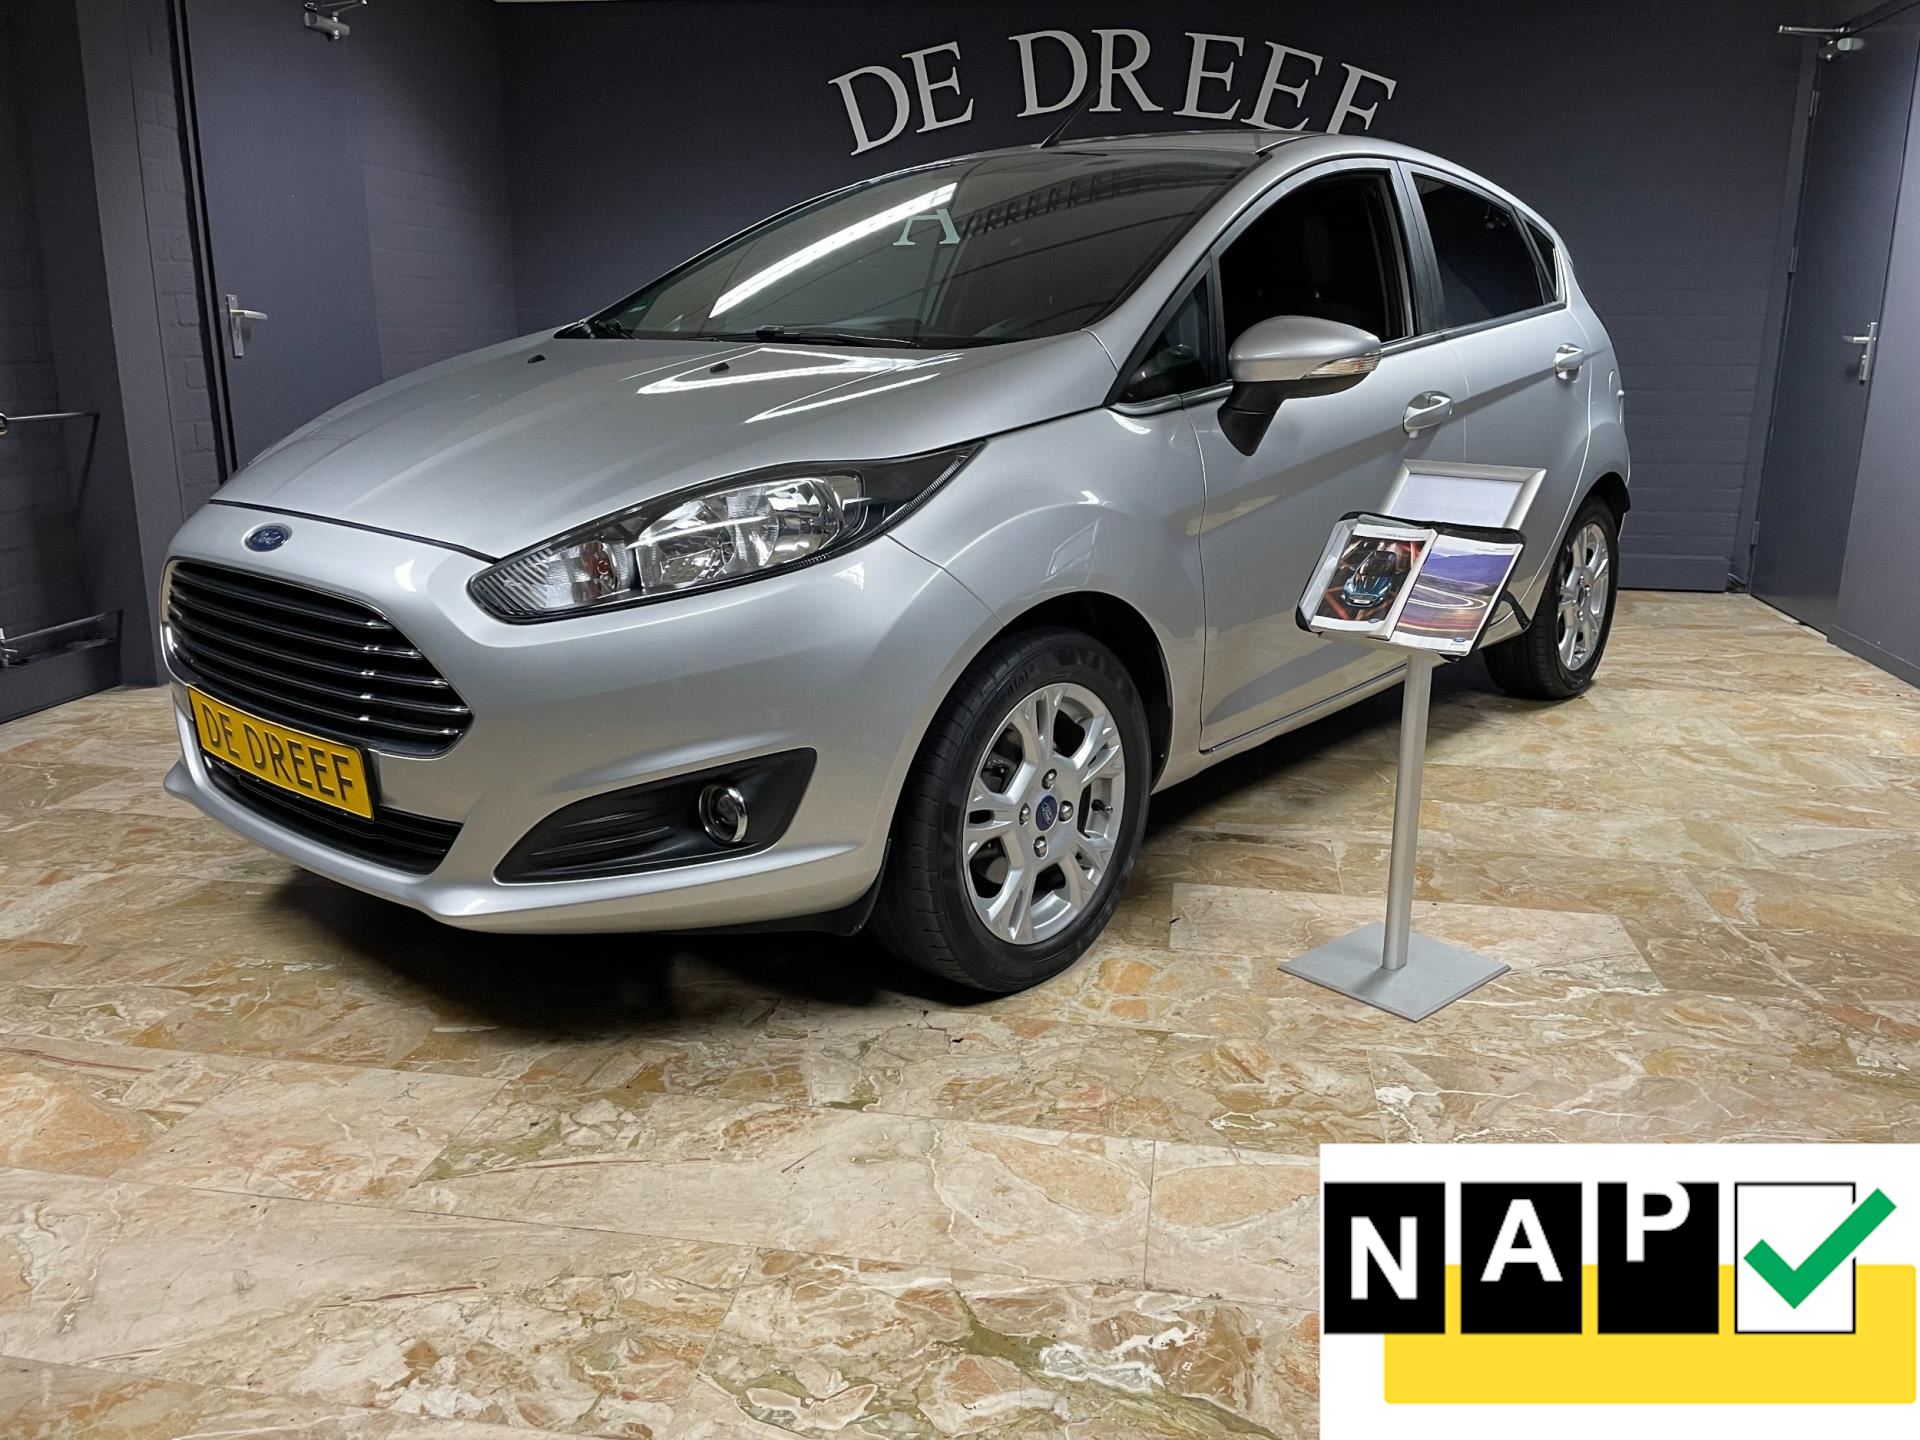 uitvinden servet steek Ford Fiesta - 1.25 Benzine uit 2014 - www.dedreefautos.nl